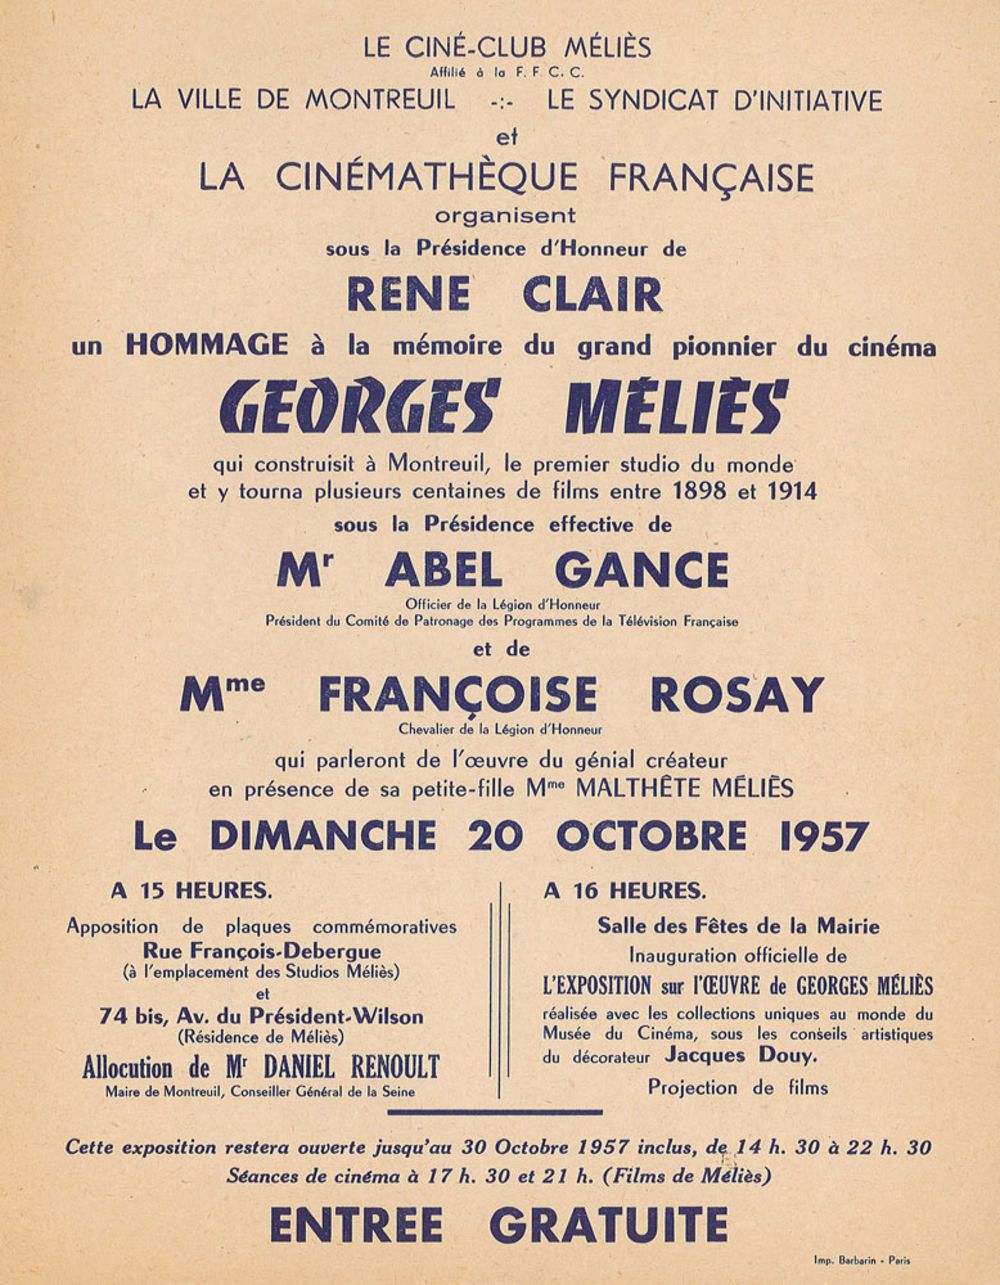 Affiche annonçant une soirée spéciale en hommage à George Méliès, le 20 octobre 1957 ©Archives municipales de la ville de Montreuil